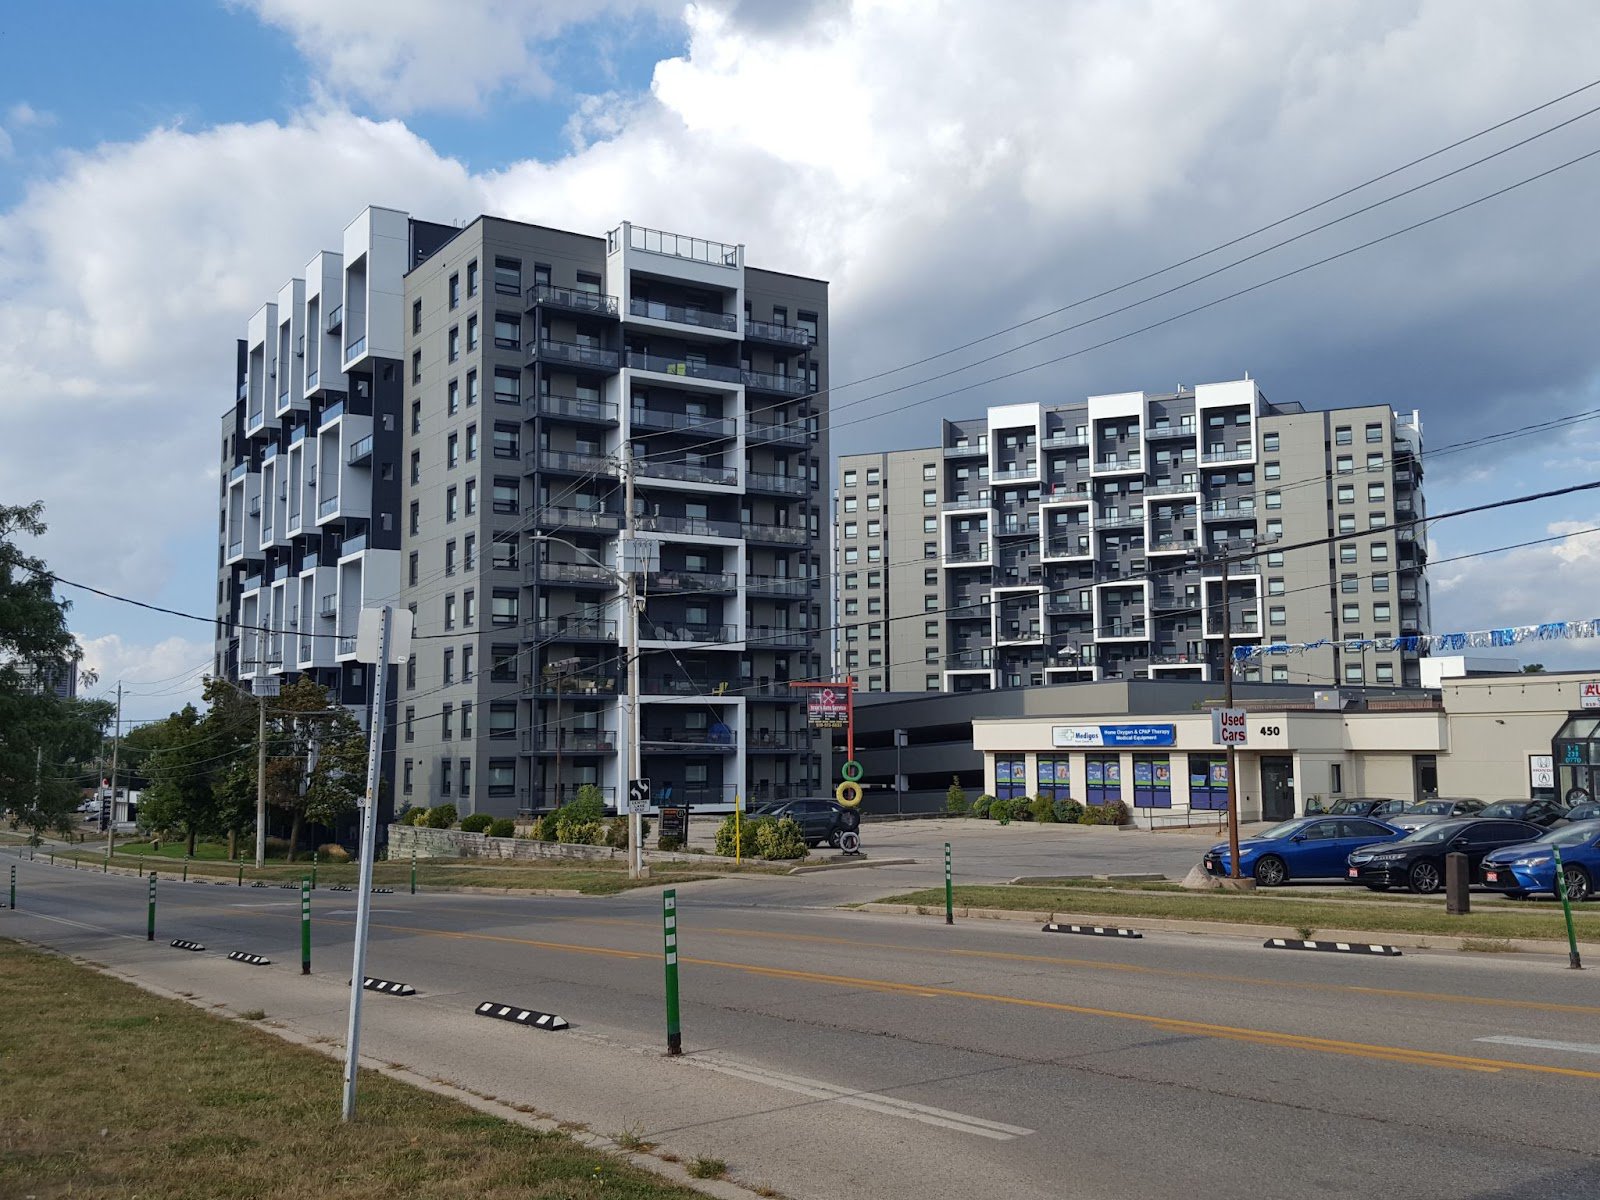 Багатоповерхові будинки, м. Кітченер, Онтаріо, серпень 2022 року